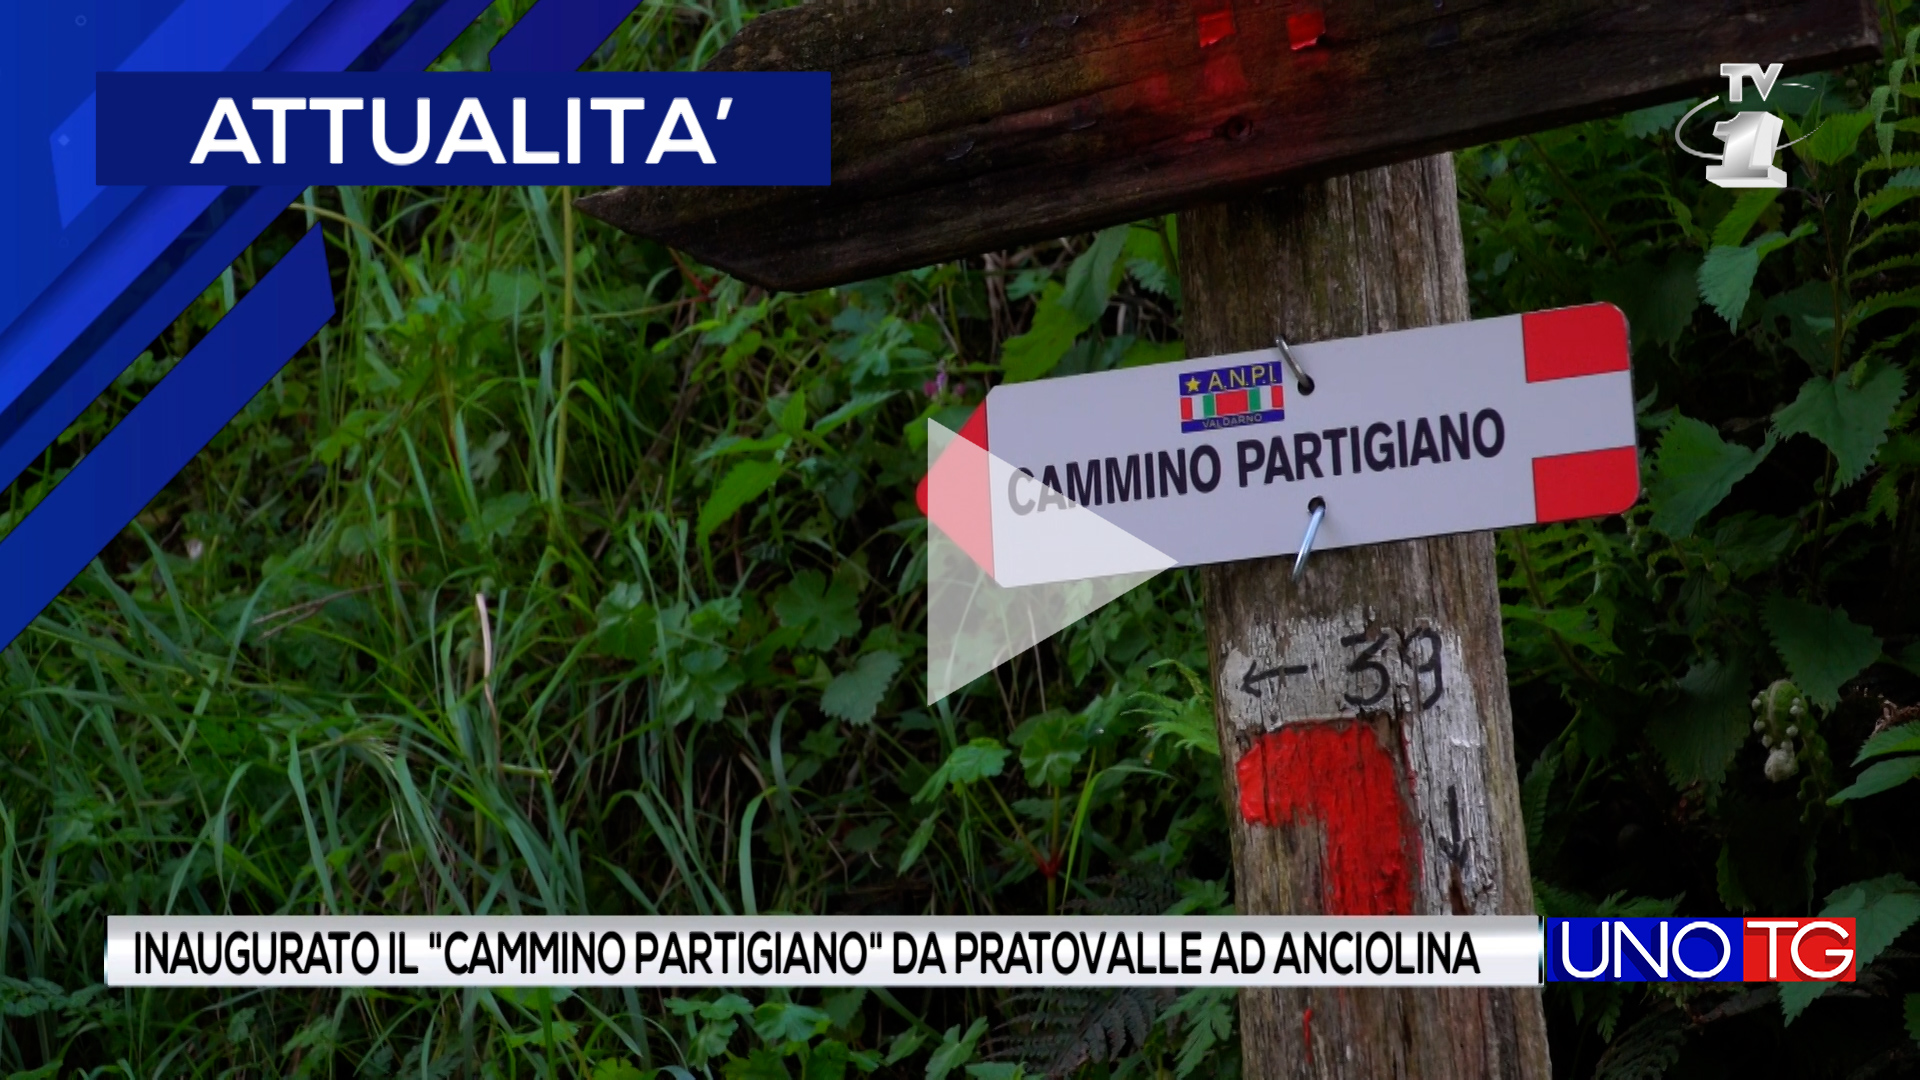 Inaugurato il "Cammino Partigiano" da Pratovalle ad Anciolina